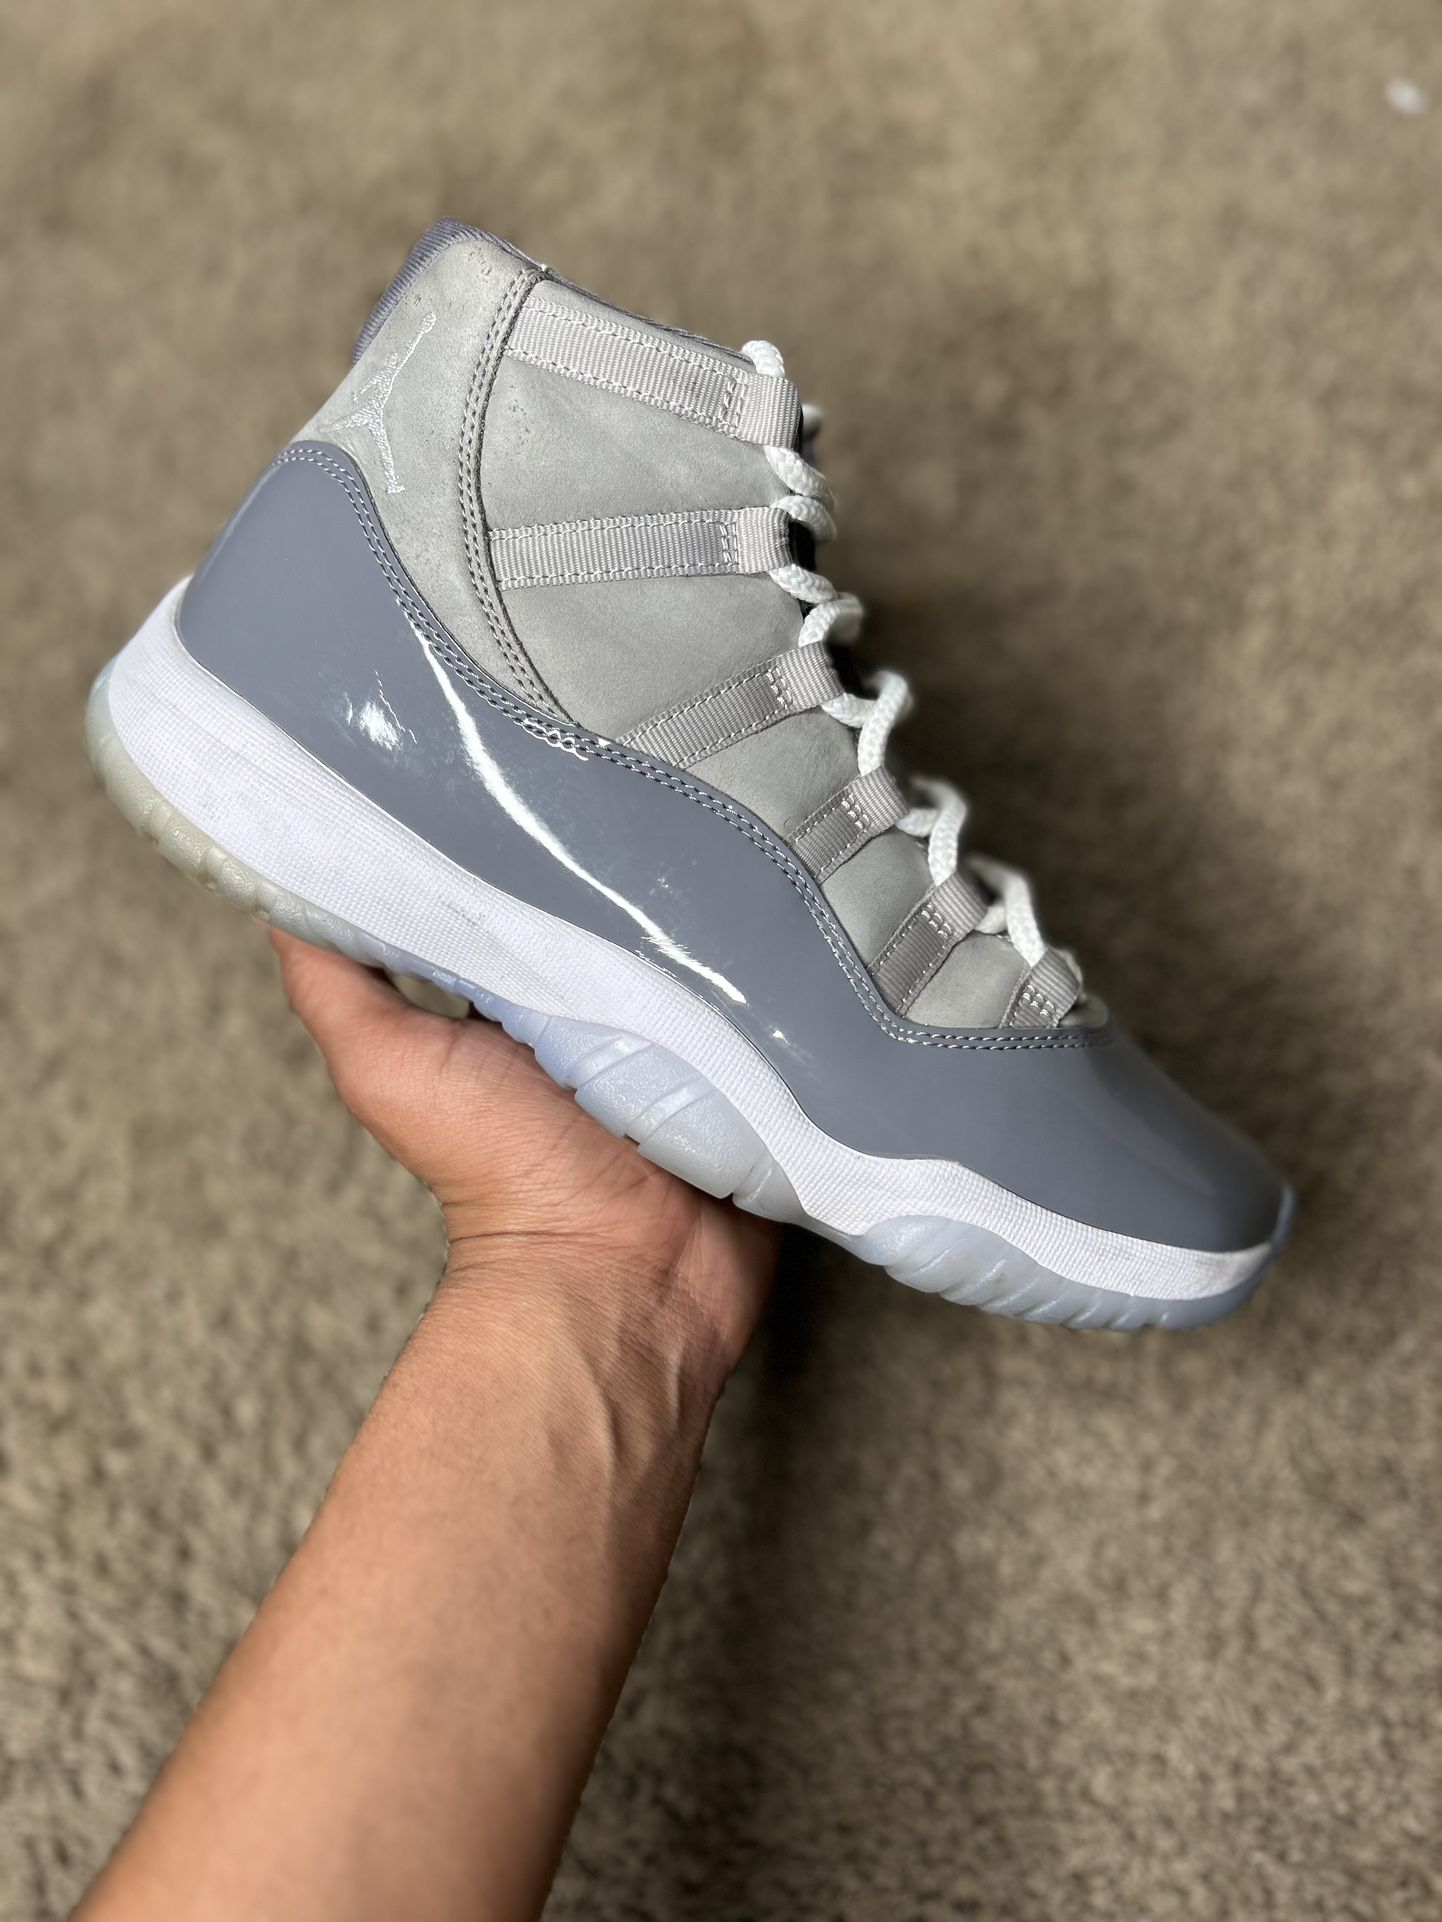 Jordan 11 Cool Grey 